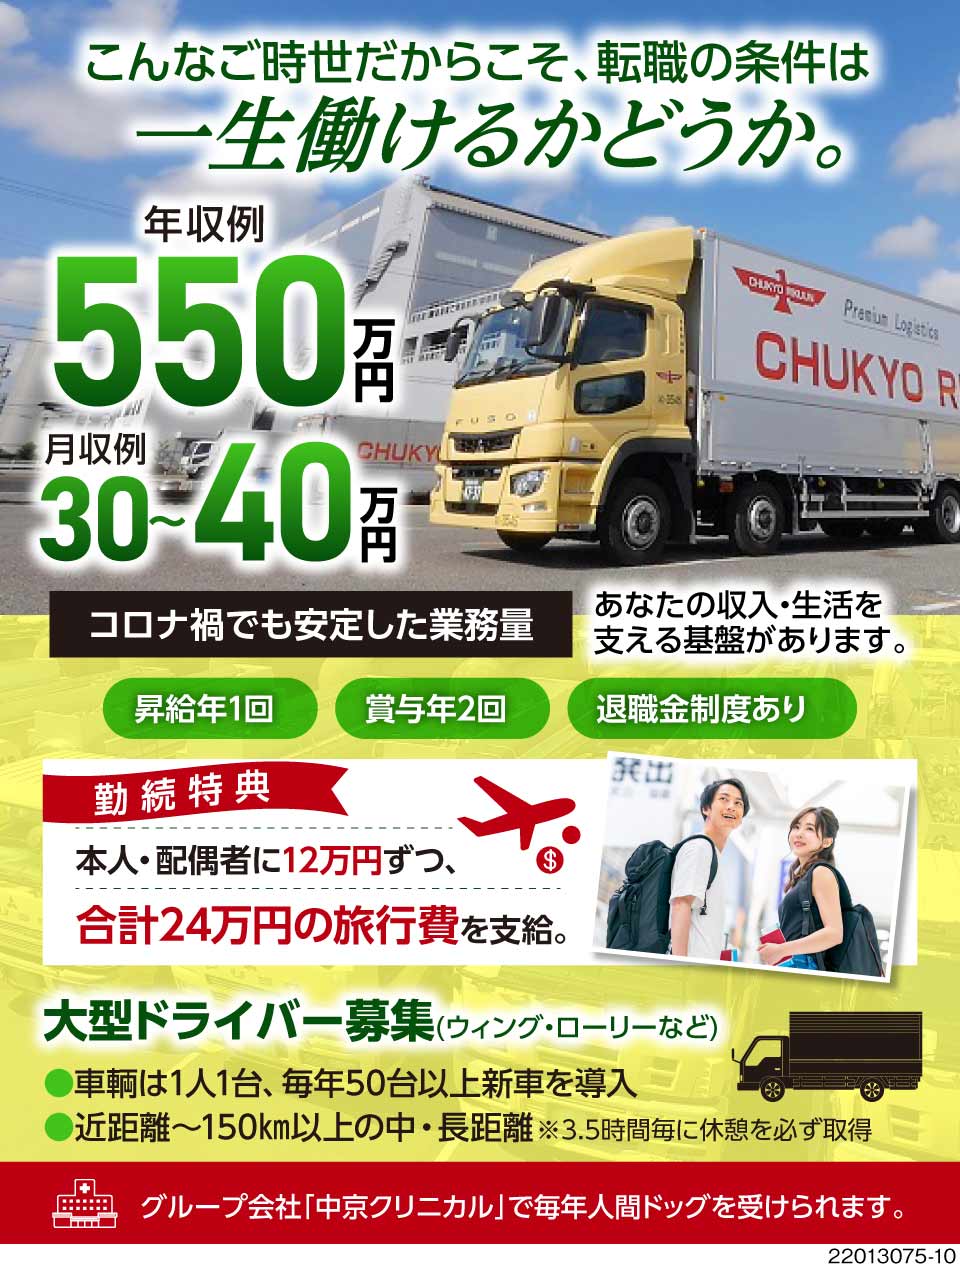 中京陸運株式会社 愛知県清須市 大型トラックドライバー募集 年収例5 ドライバー 運転手求人のジョブコンプラスd